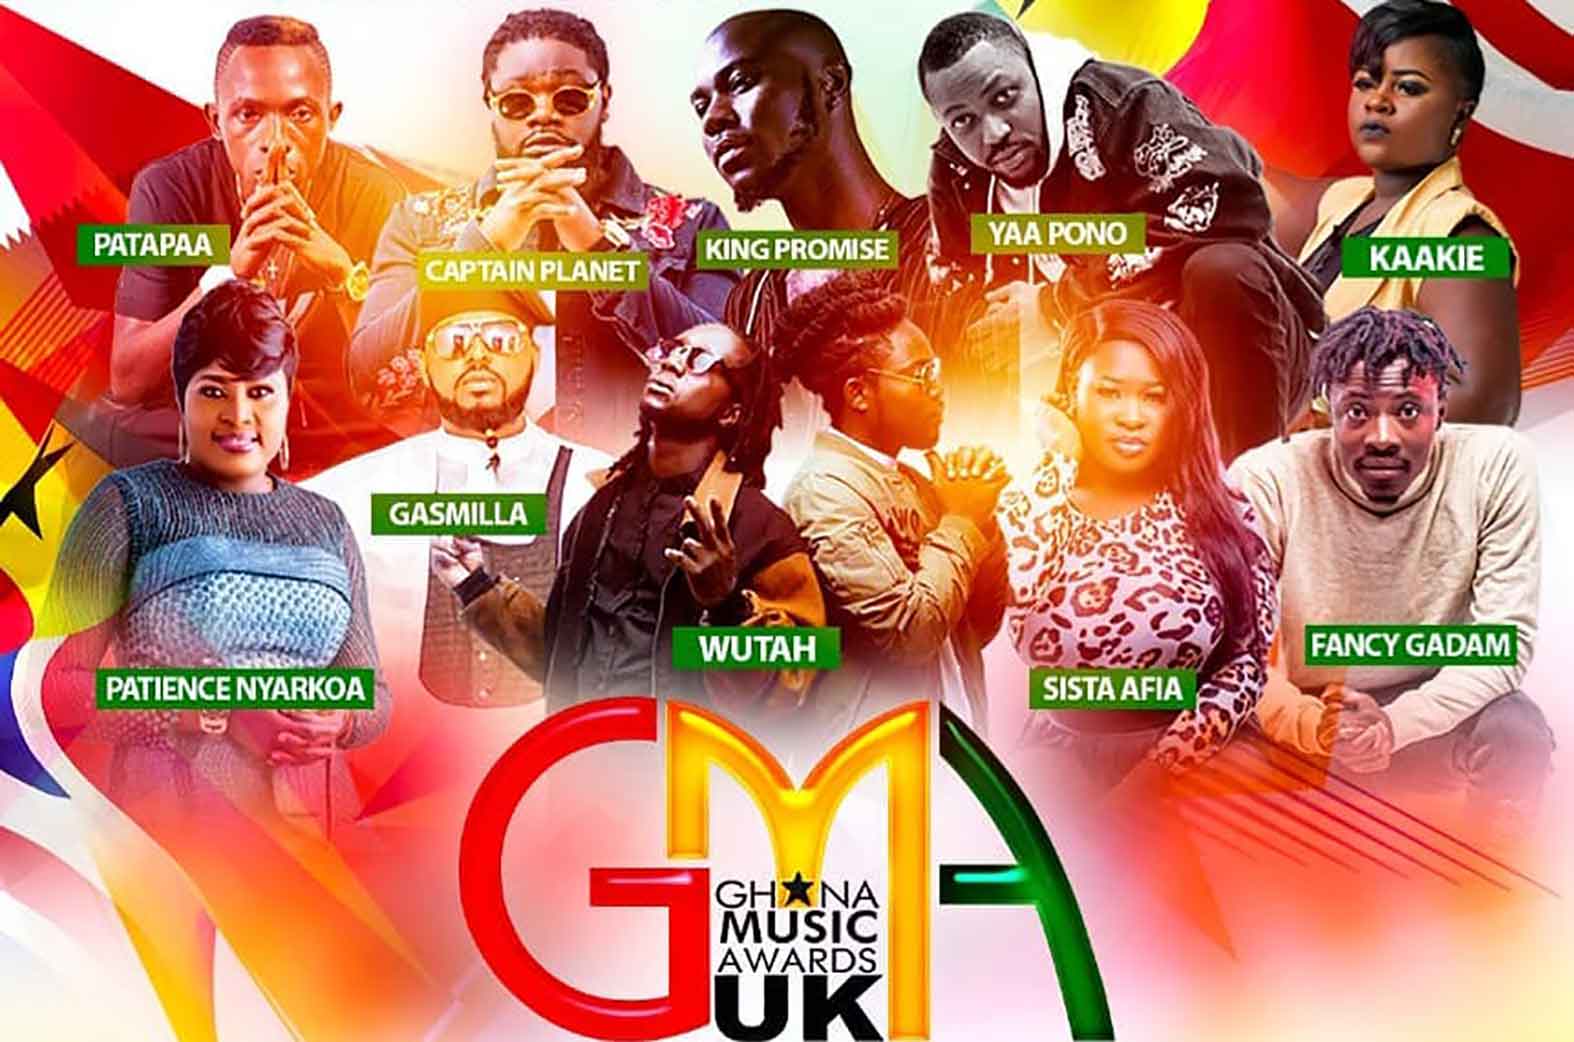 Ghana Music Awards UK 2018